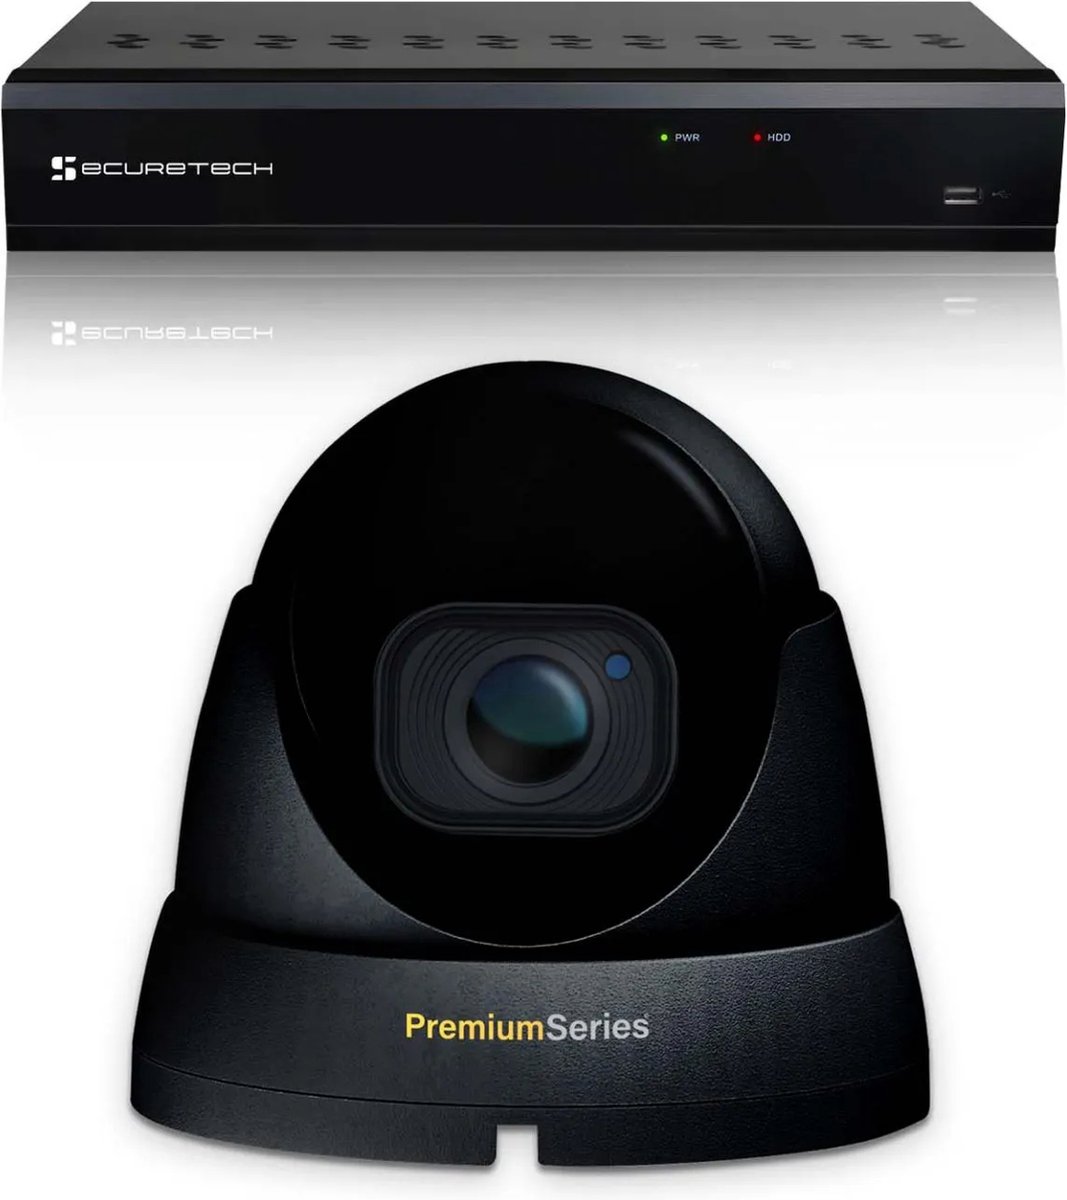 Securetech bekabeld camerabewaking systeem - met 1 beveiligingscamera - zwart - voor binnen & buiten - haarscherp beeldkwaliteit - nachtzicht tot 30 meter - software voor smartphone & pc